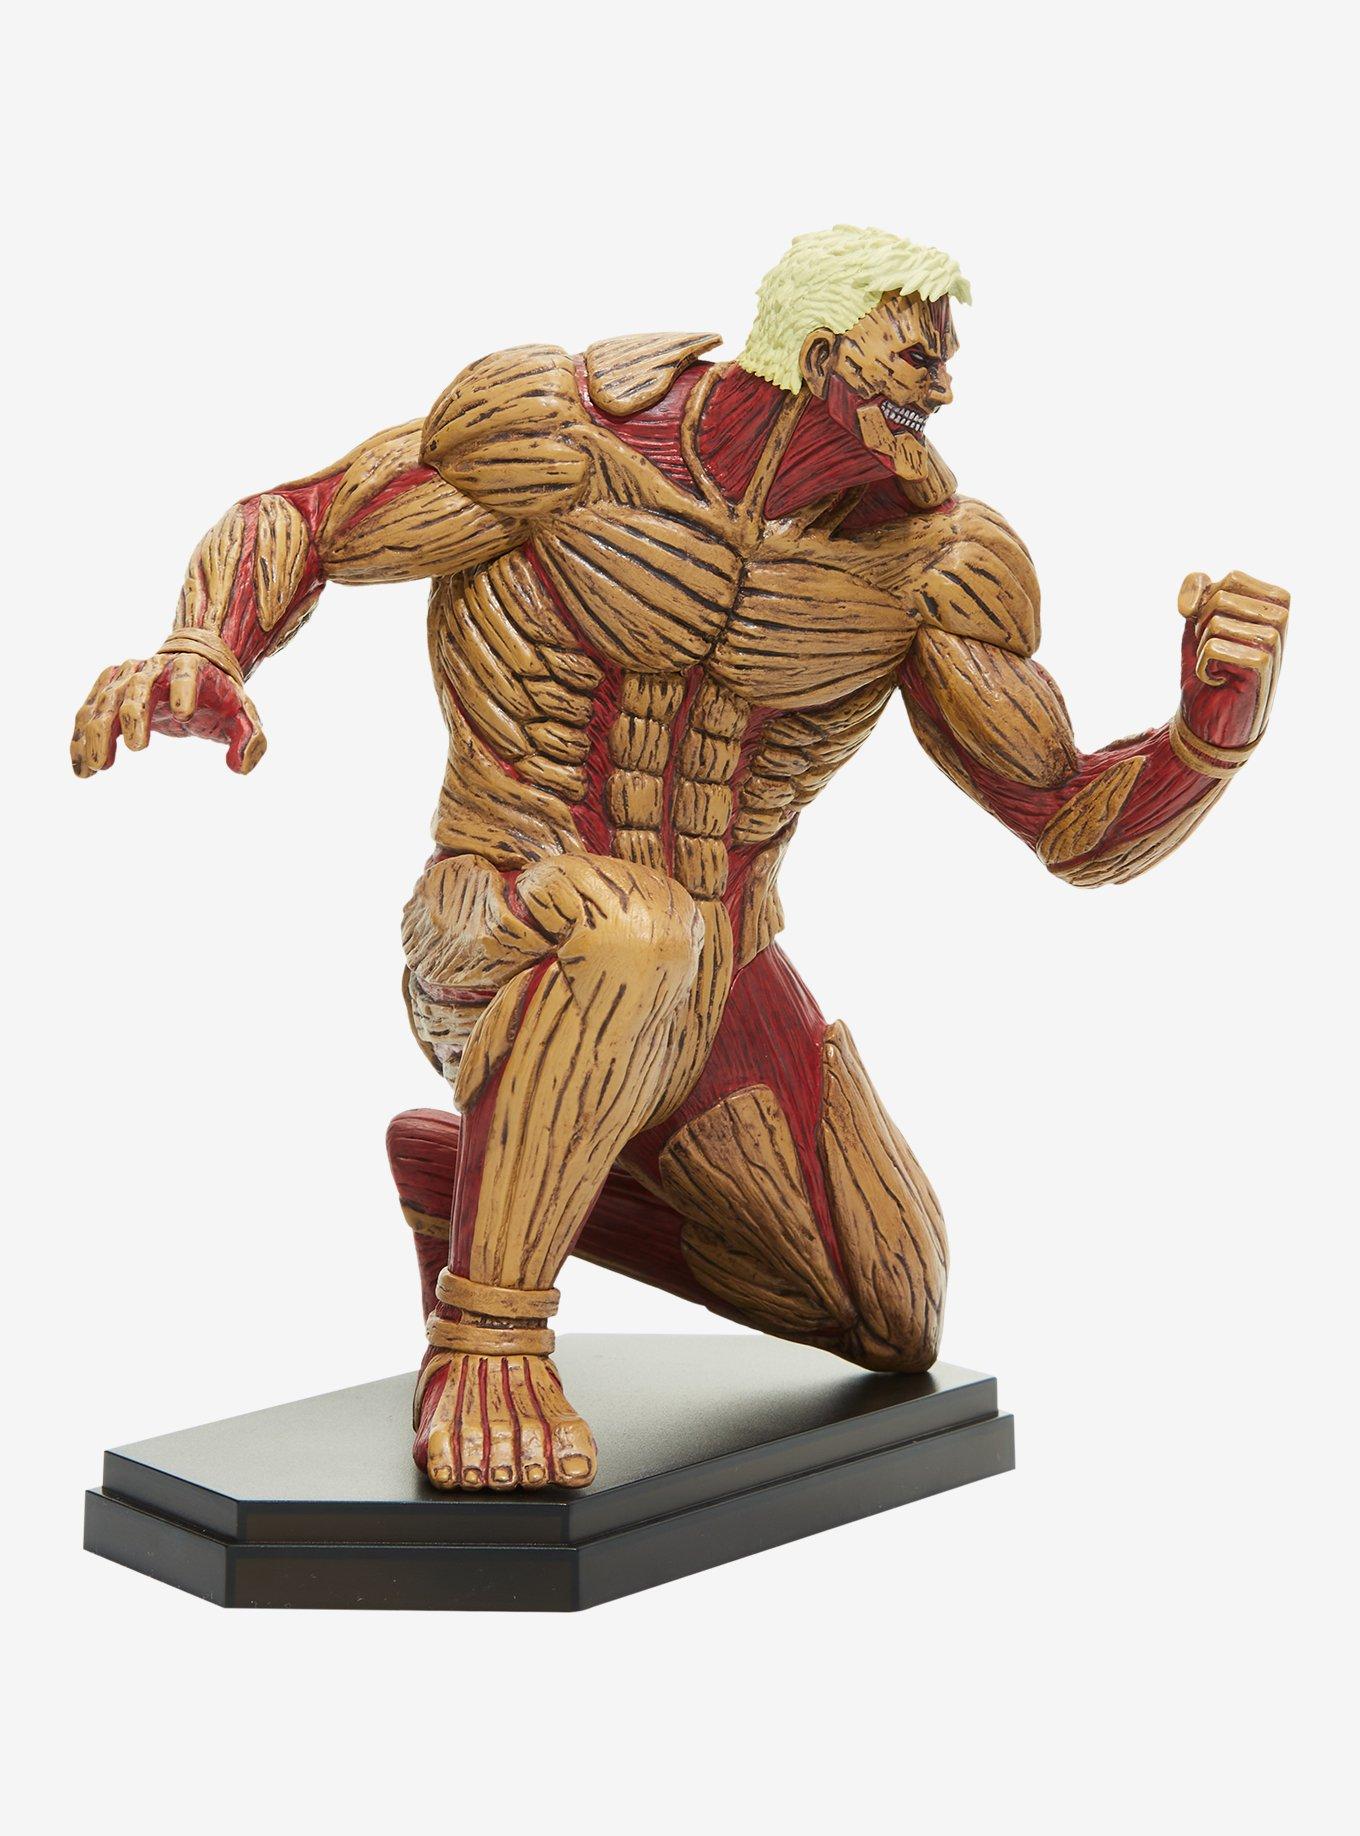 Attack on Titan Pop Up Parade PVC Statue Reiner Braun 18 cm